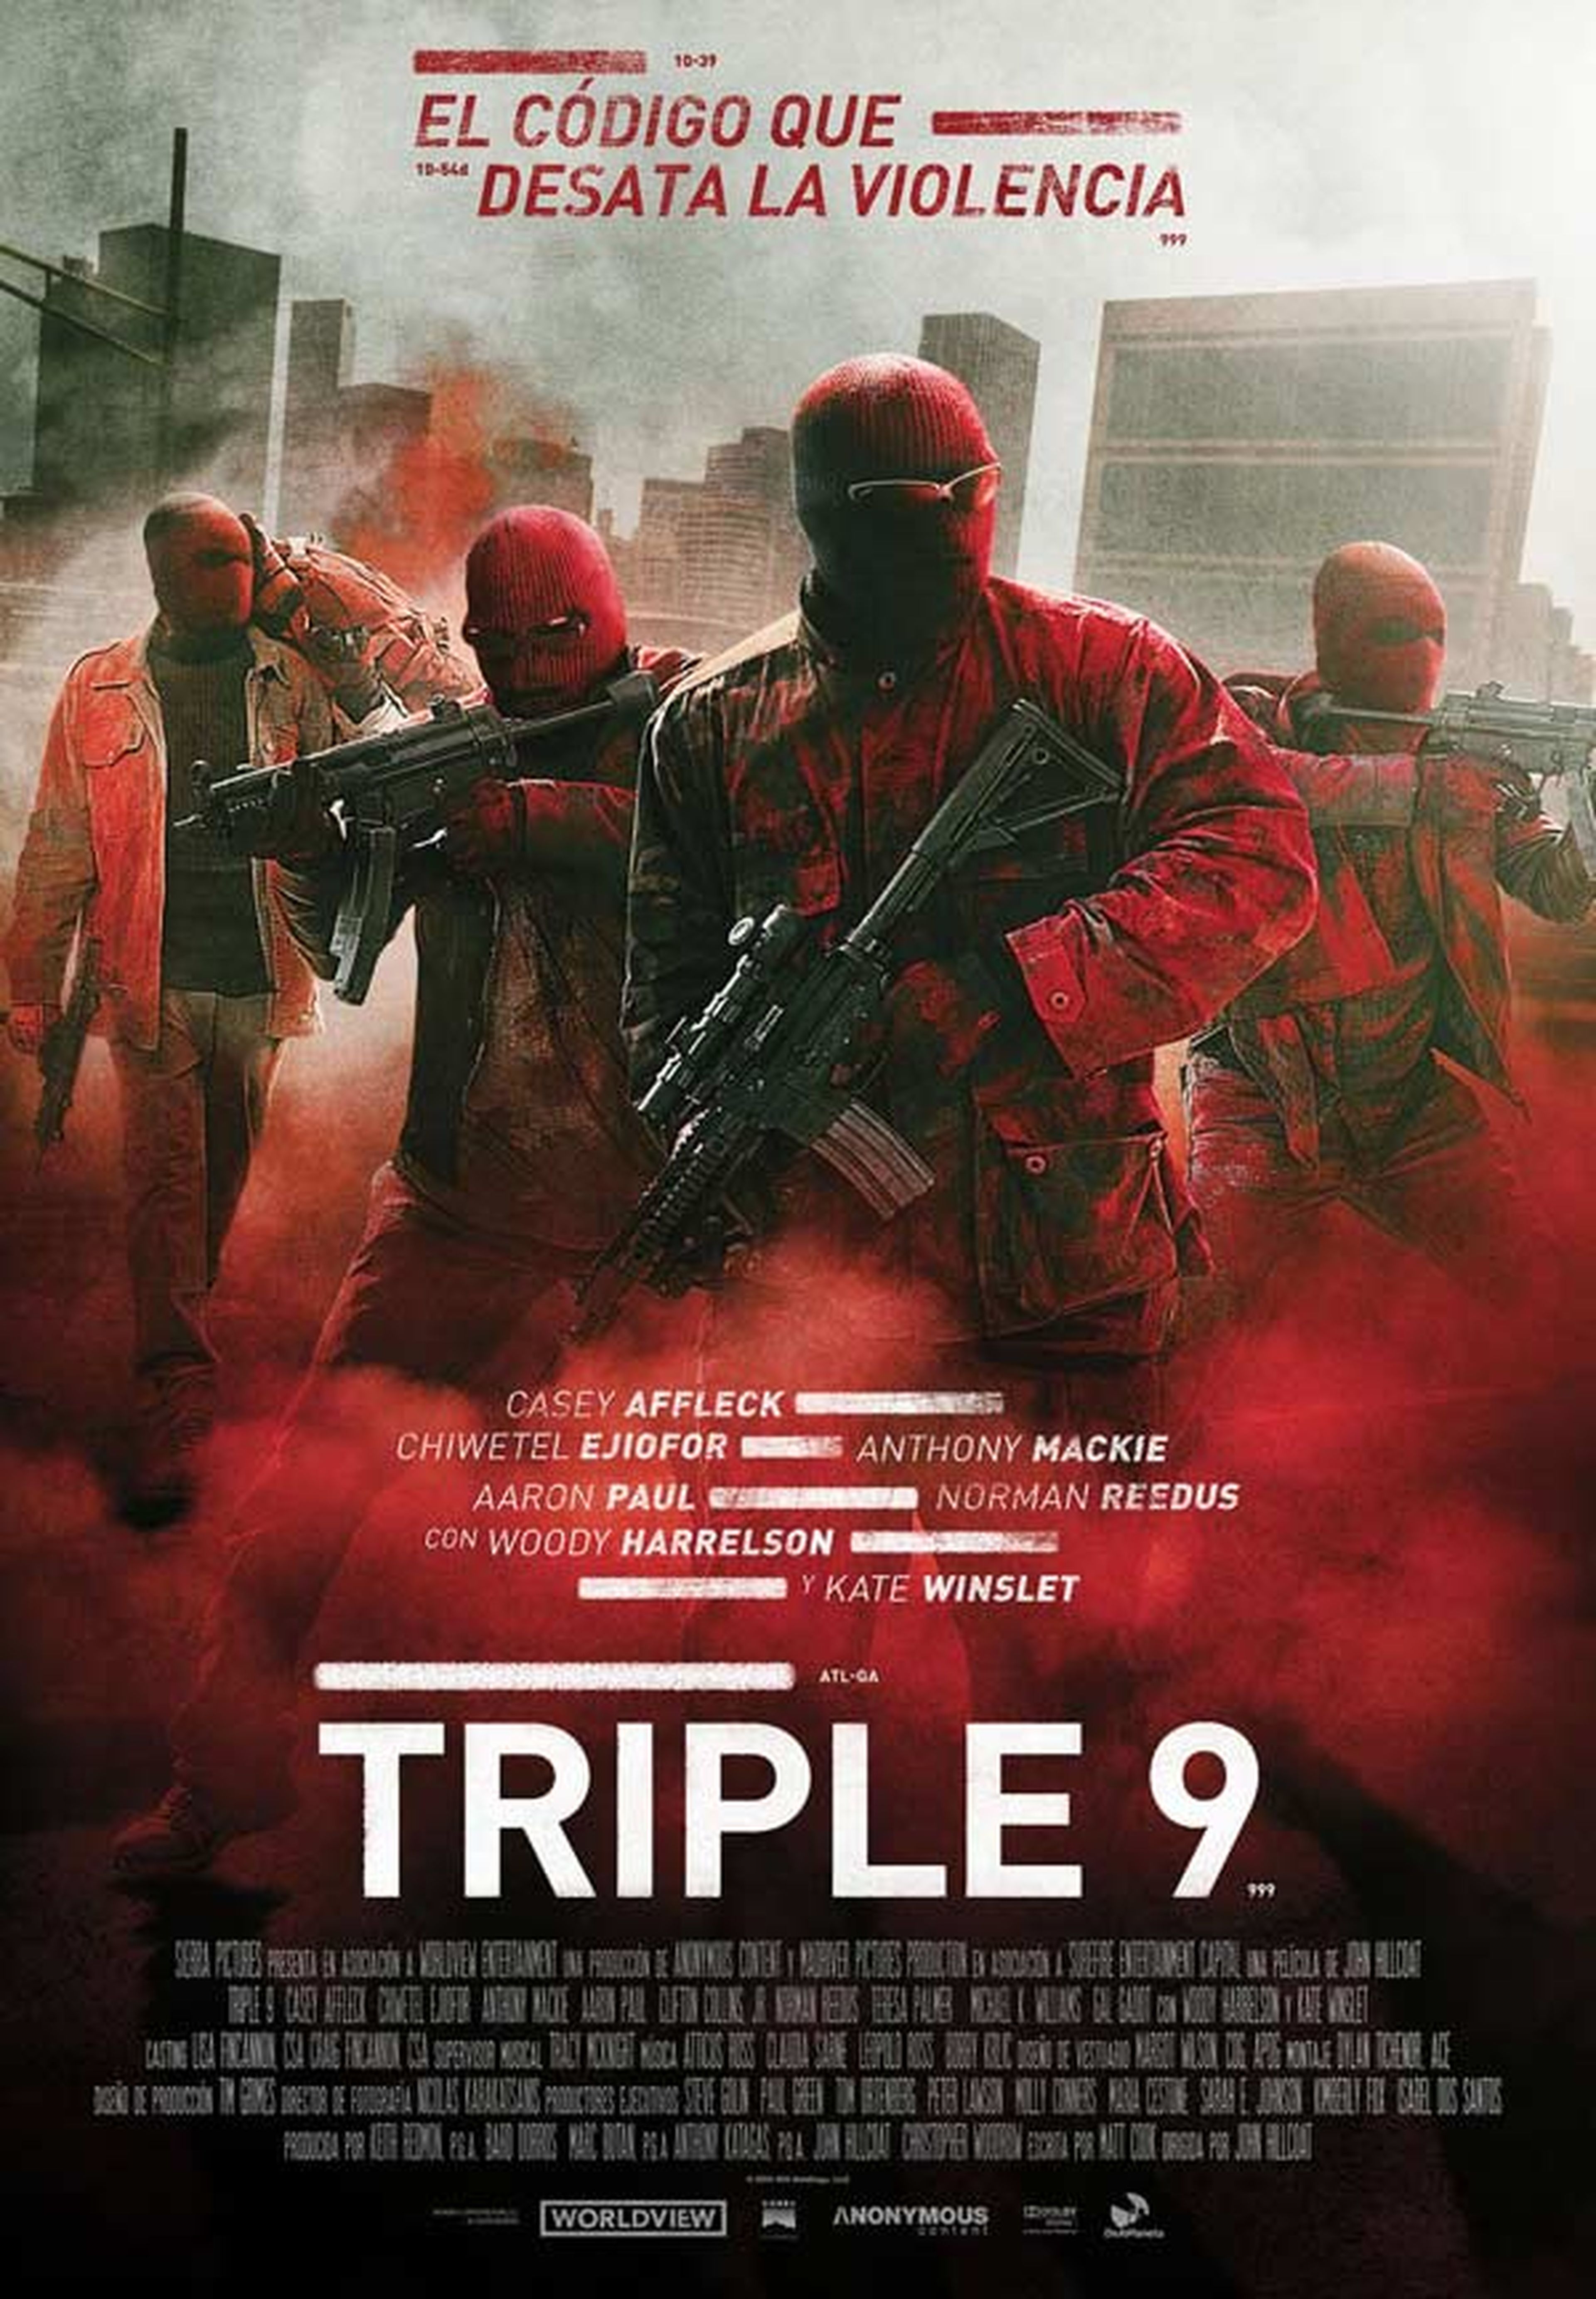 Triple 9 - Clip en primicia con Aaron Paul y Norman Reedus